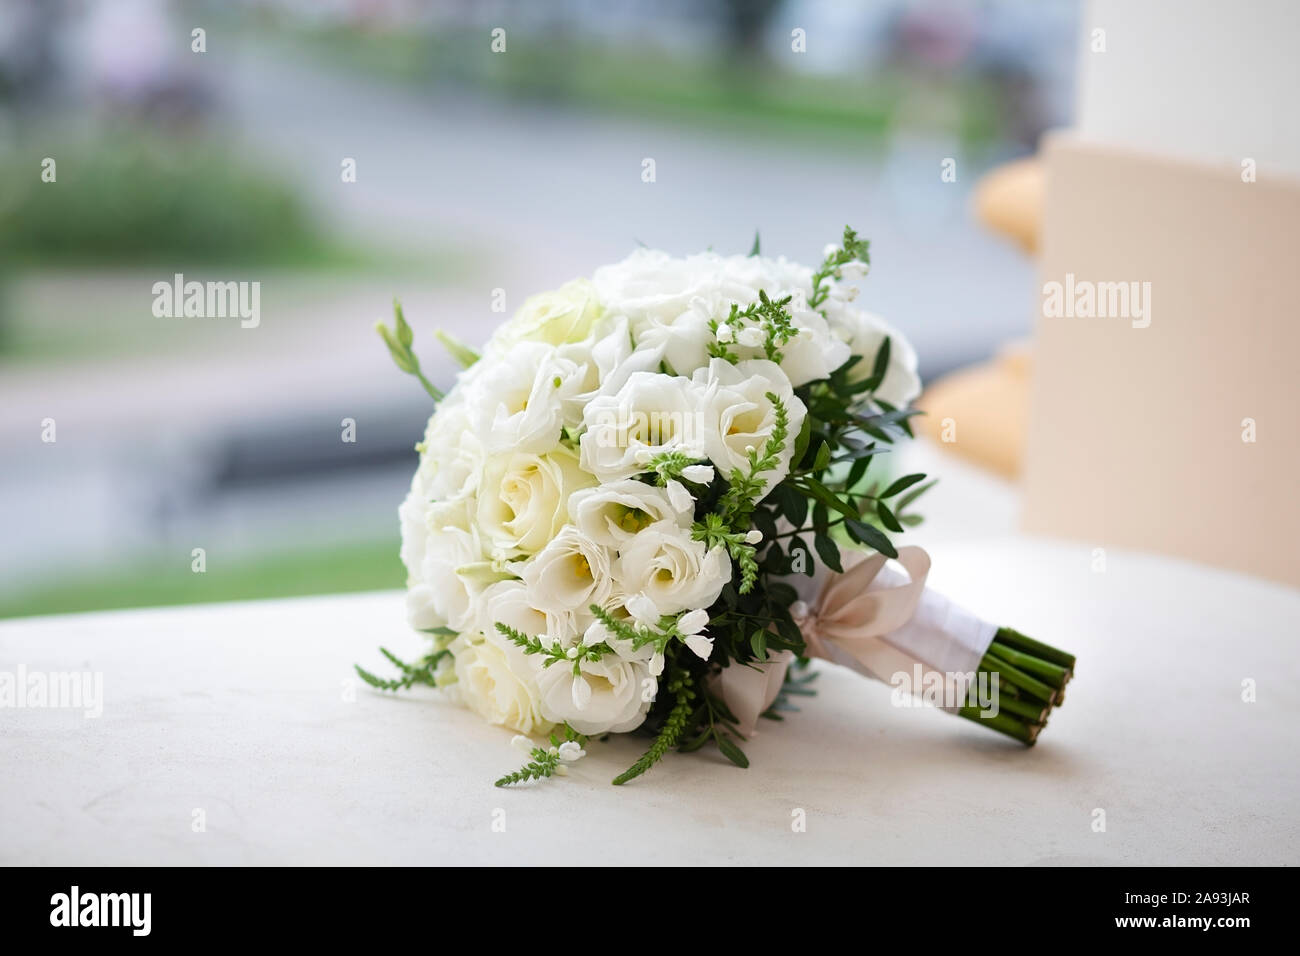 Festliche runde Blumenstrauß aus schönen weissen Blüten. Blumenstrauß aus  zarte weiße Rosen für eine Hochzeit, Verlobung, Bestätigung. Brautstrauß  für die Braut Stockfotografie - Alamy